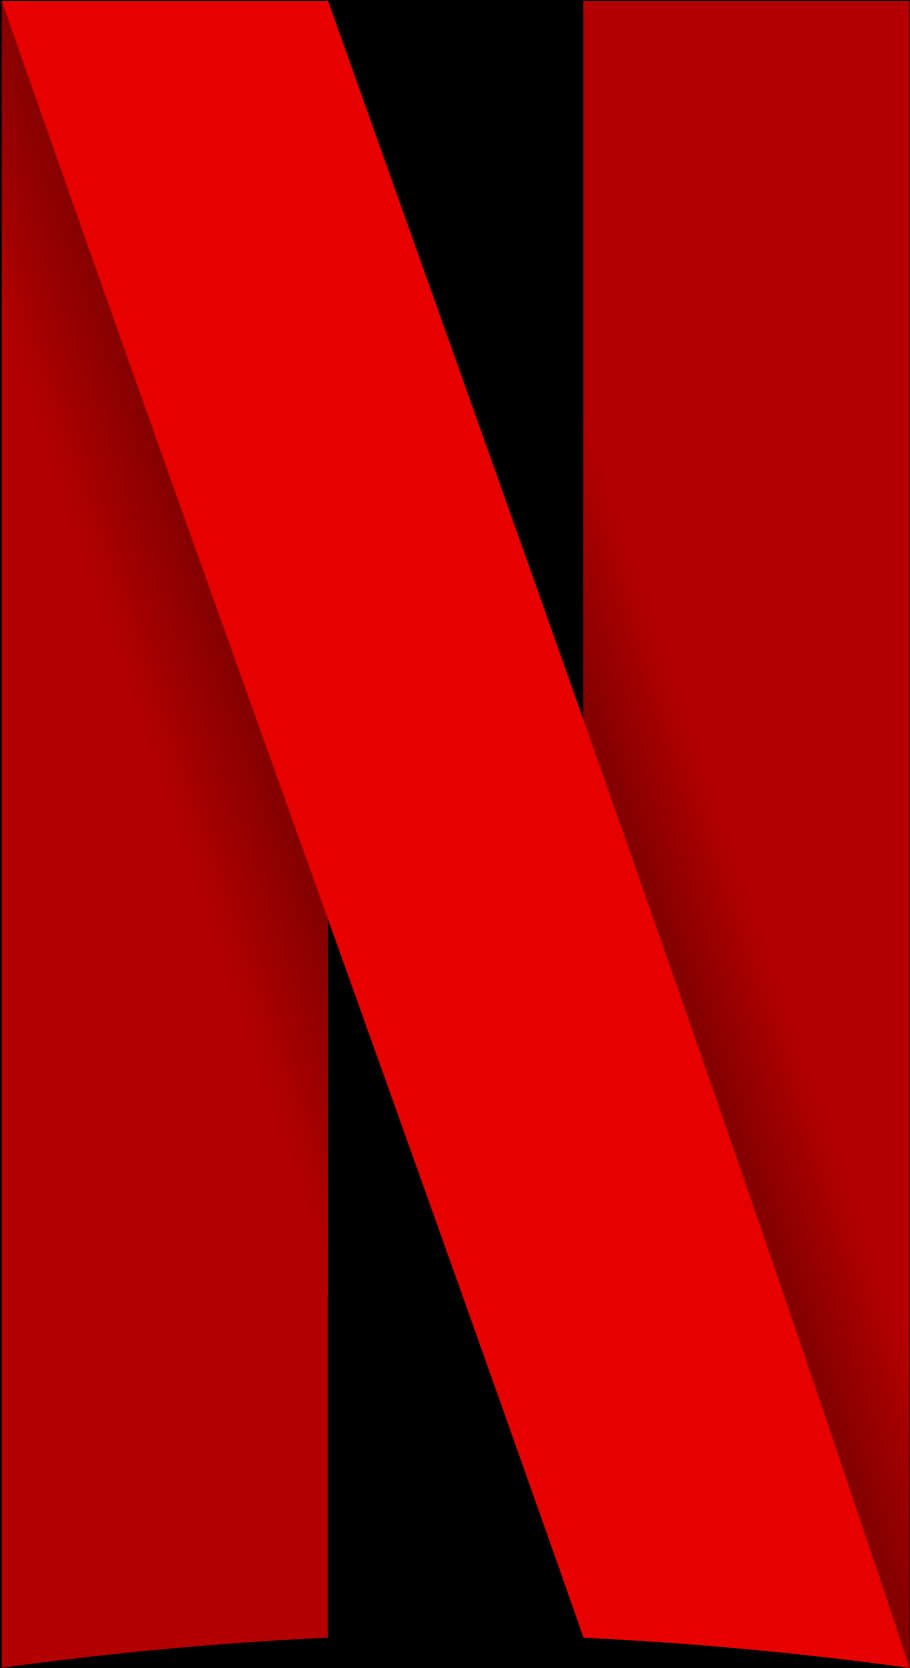 Netflix Logo Icon